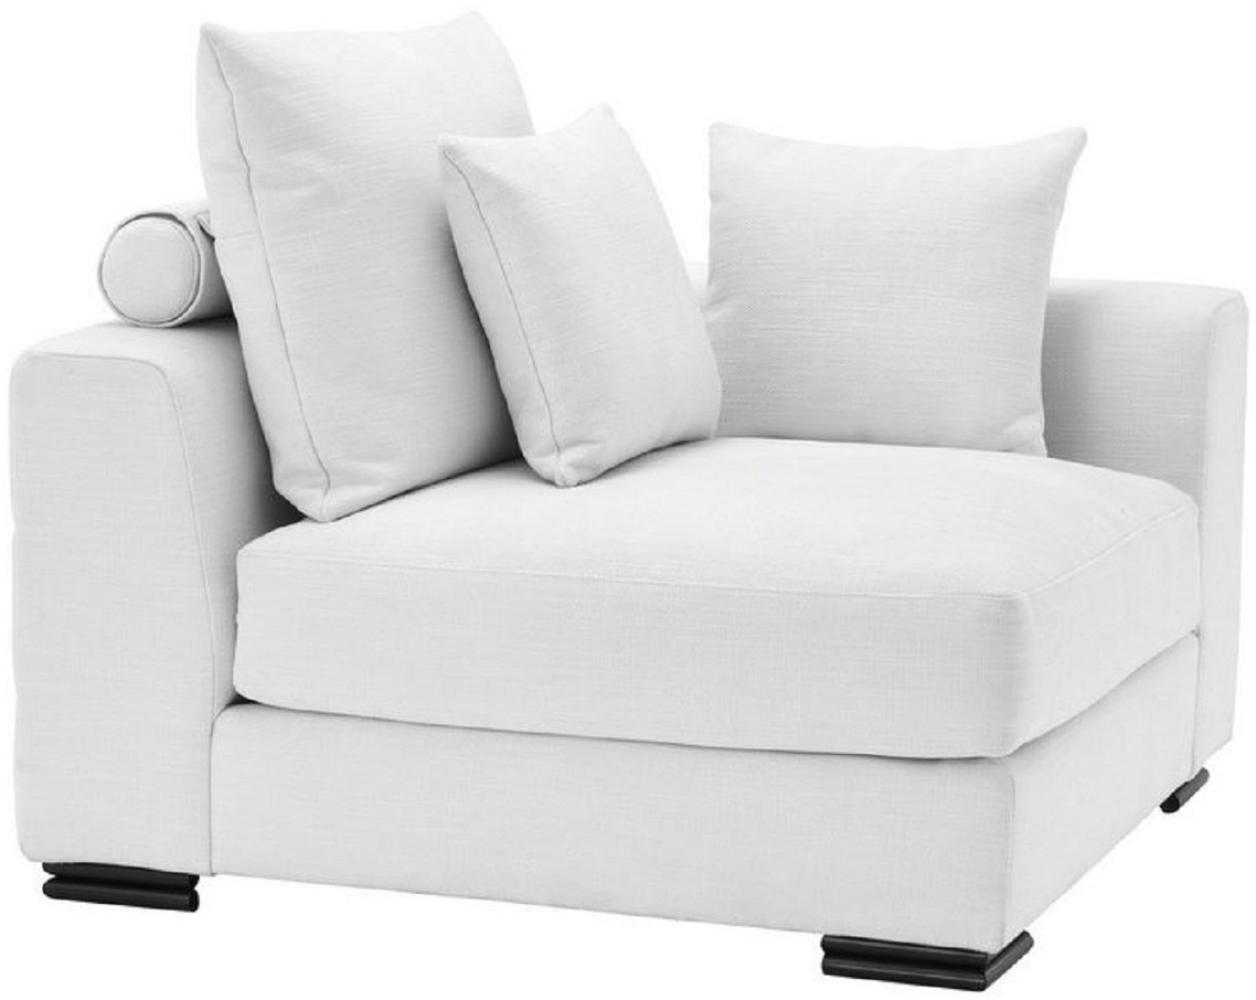 Casa Padrino Luxus Ecksofa Weiß / Schwarz 108 x 108 x H. 90 cm - Erweiterbares Wohnzimmer Sofa mit Kissen - Luxus Möbel Bild 1